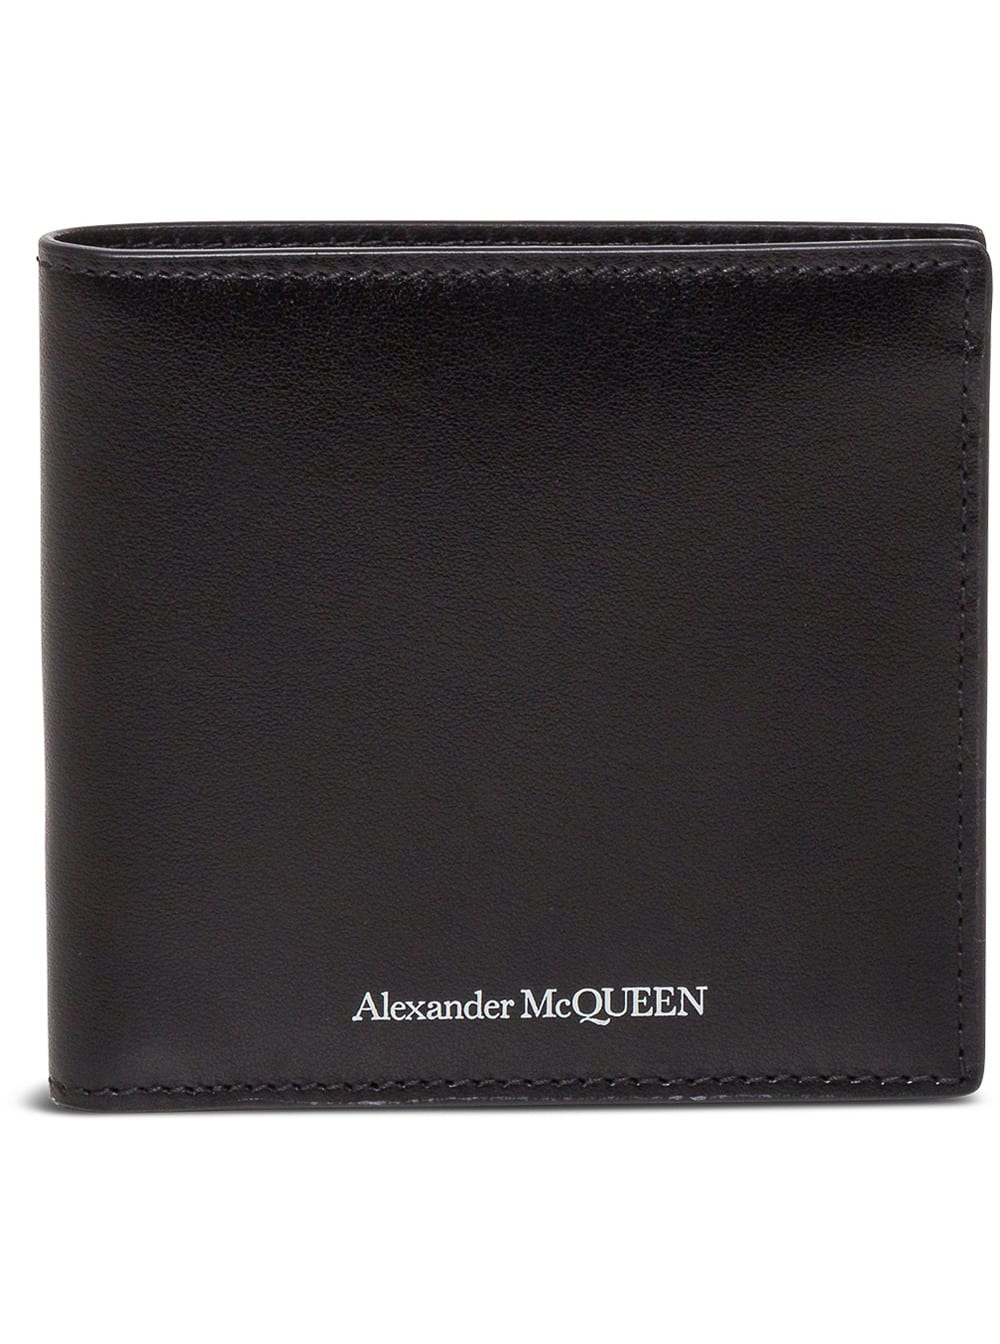 Alexander McQueen Bifold Black Leather Wallet With Logo Saint Laurent Man